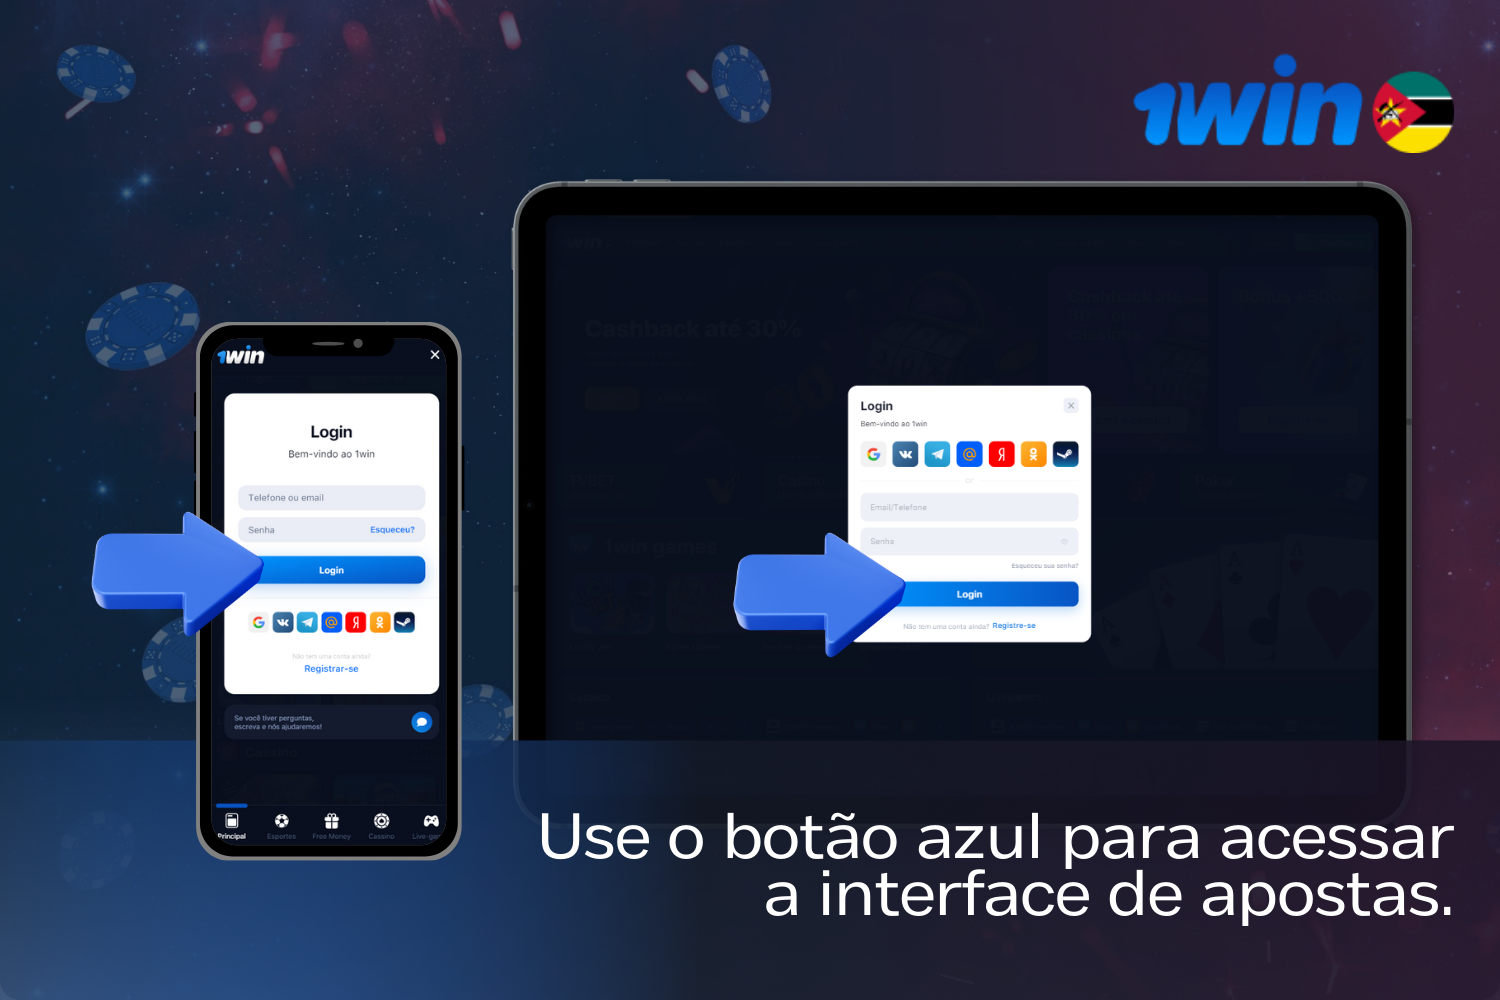 Para entrar no 1win, os utilizadores de Moçambique devem clicar no botão de início de sessão depois de introduzirem os seus dados.